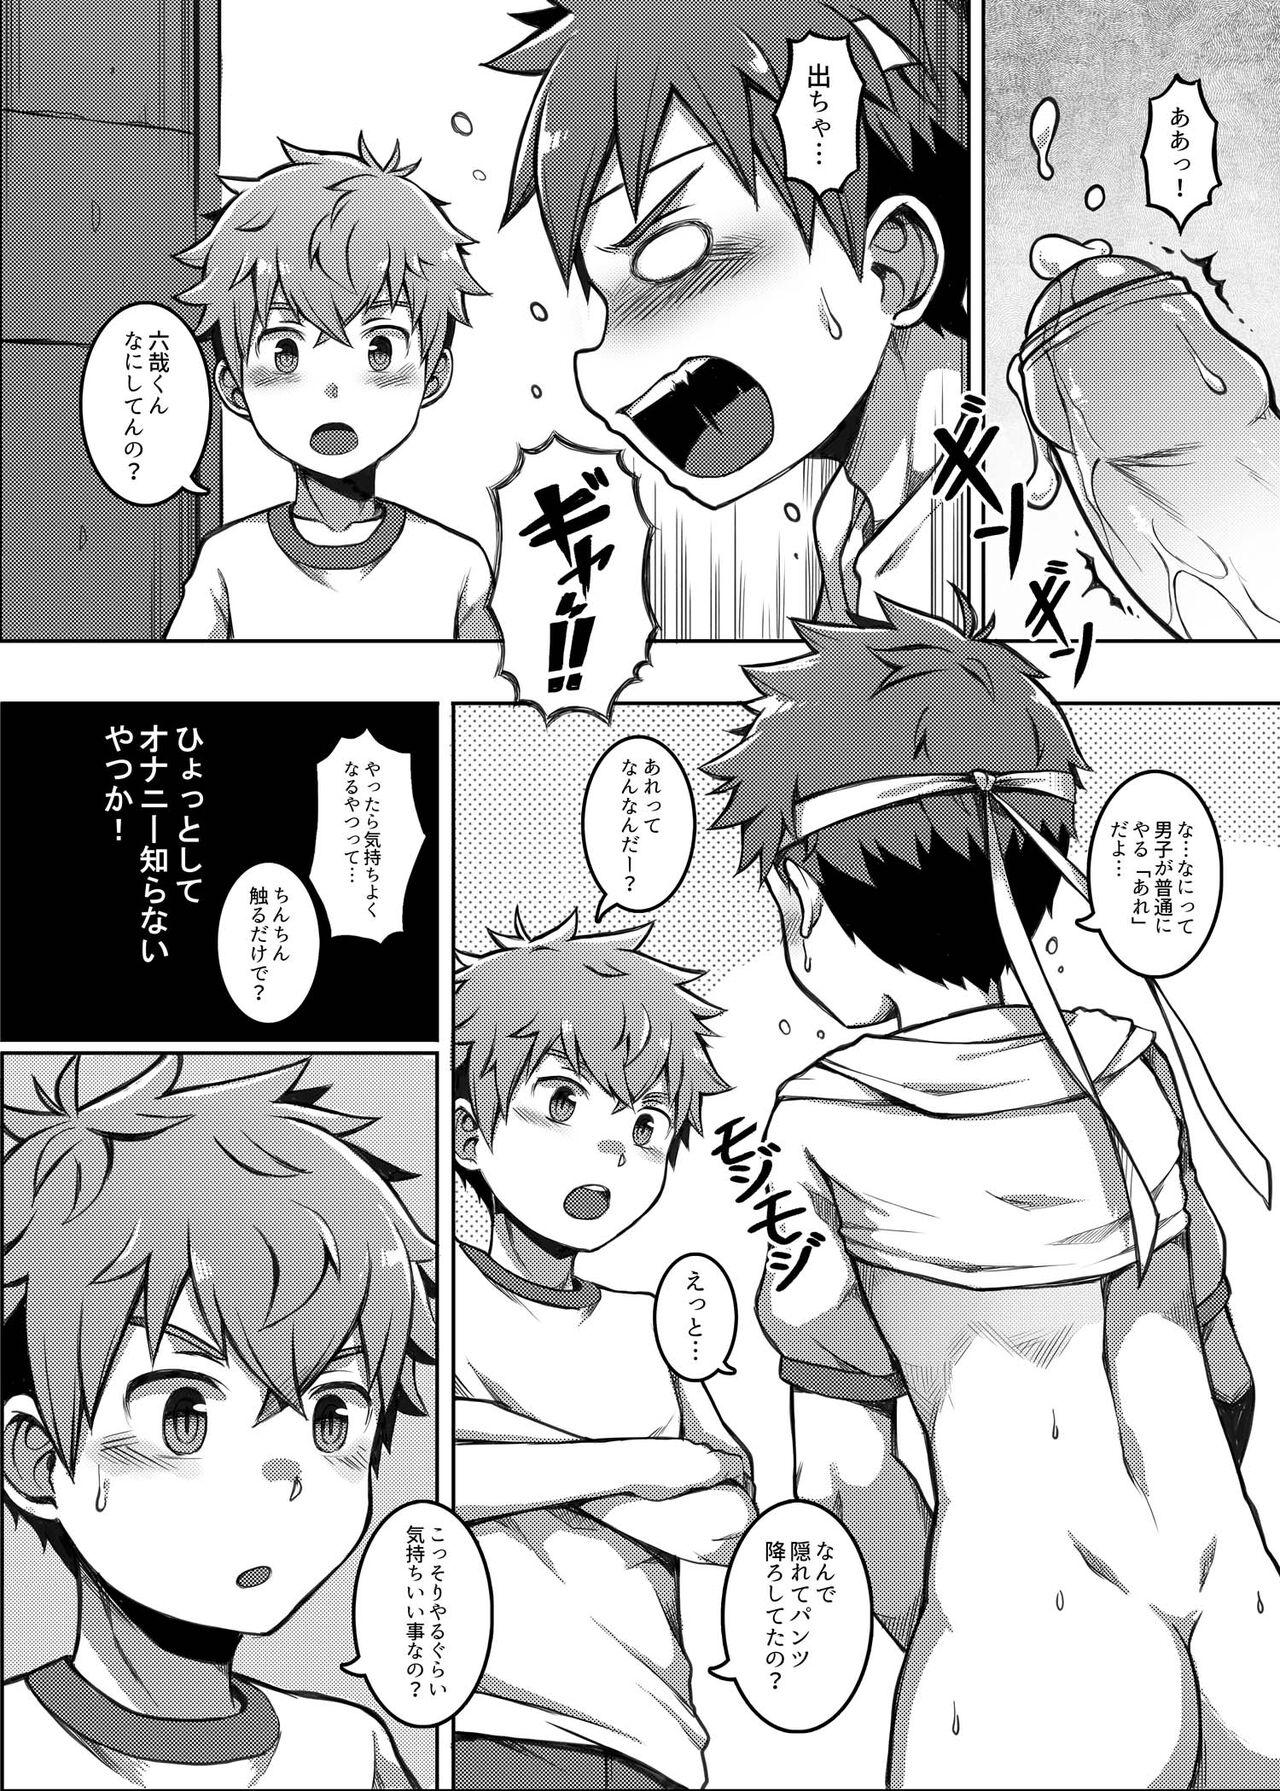 Threesome Taiiku Jugyou wa Saikou daze! - Physical Education is Awesome! - Original Argenta - Page 10